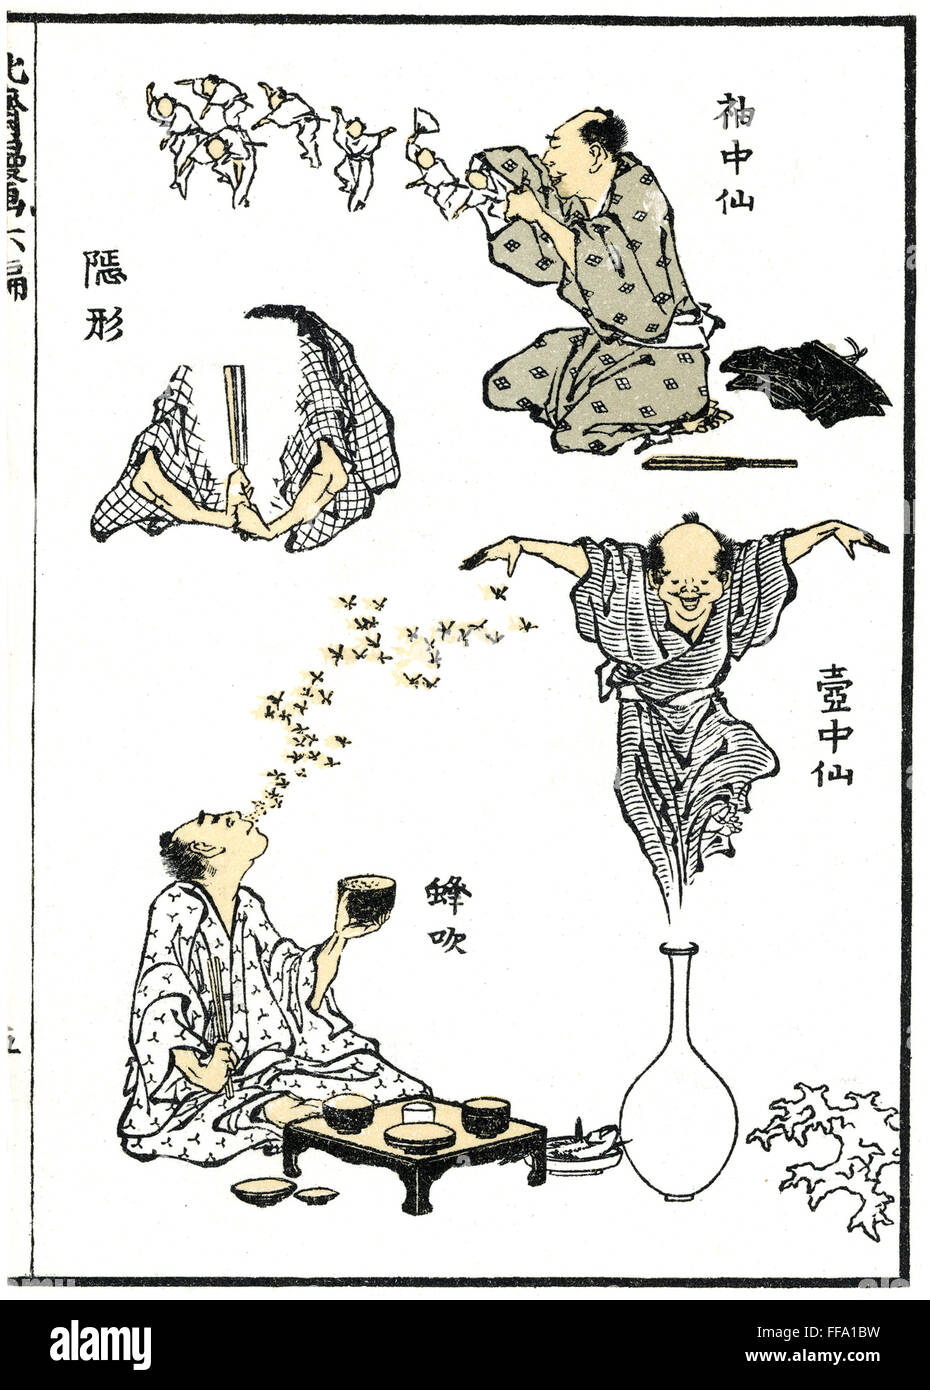 HOKUSAI: MANGA, 1819. /nJapanese Zauberer Durchführung verschwinden Magie, Hülse Magie, Ausatmen, Bienen und Vase Magie in diesem Holzschnitt Blatt, 1819, aus dem 'Manga' von Katasushika Hokusai. Stockfoto